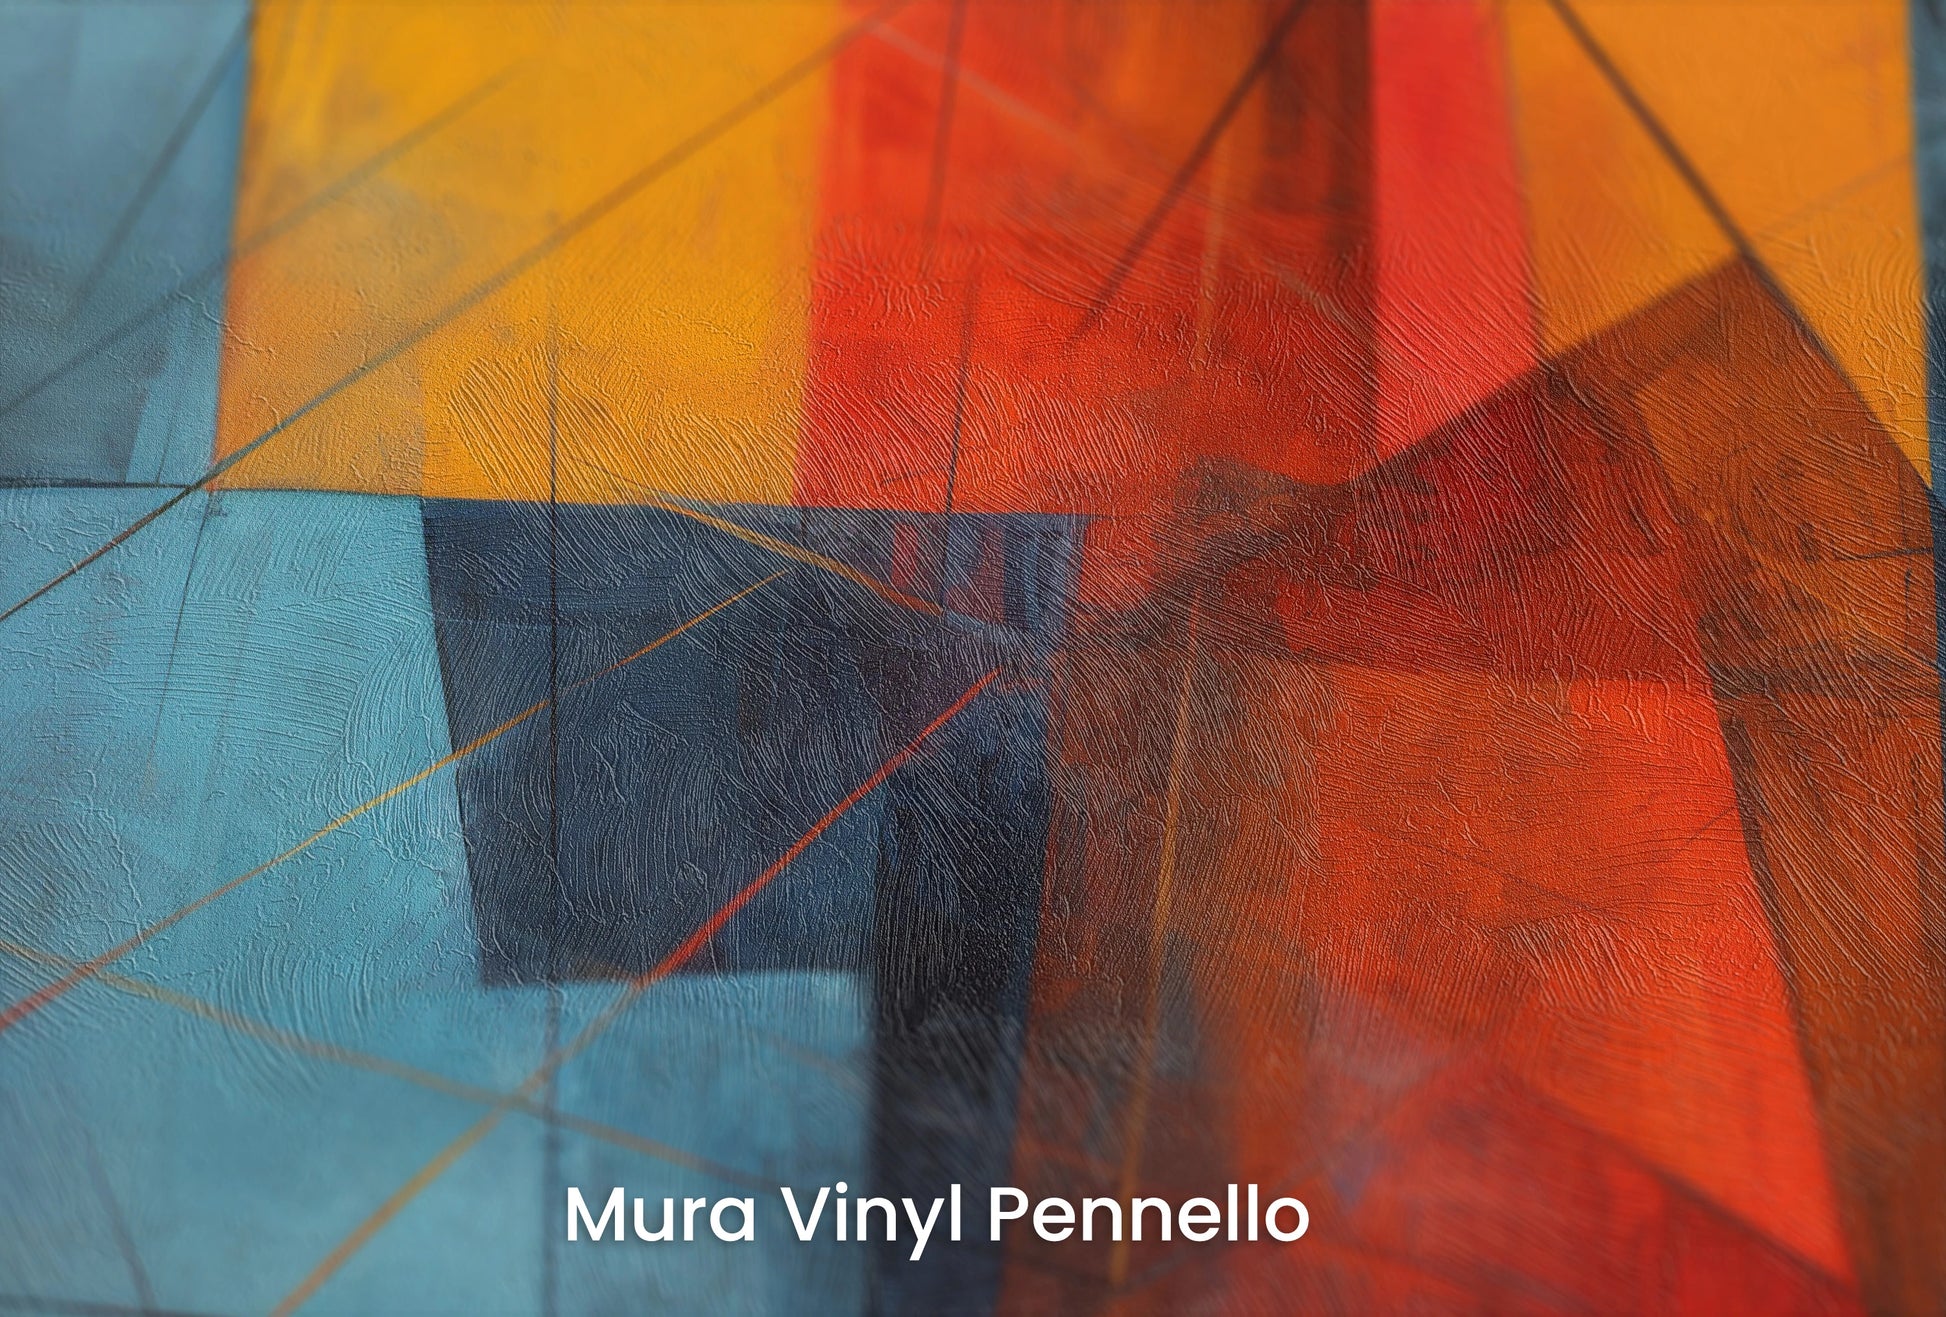 Zbliżenie na artystyczną fototapetę o nazwie Abstract Dynamics #2 na podłożu Mura Vinyl Pennello - faktura pociągnięć pędzla malarskiego.